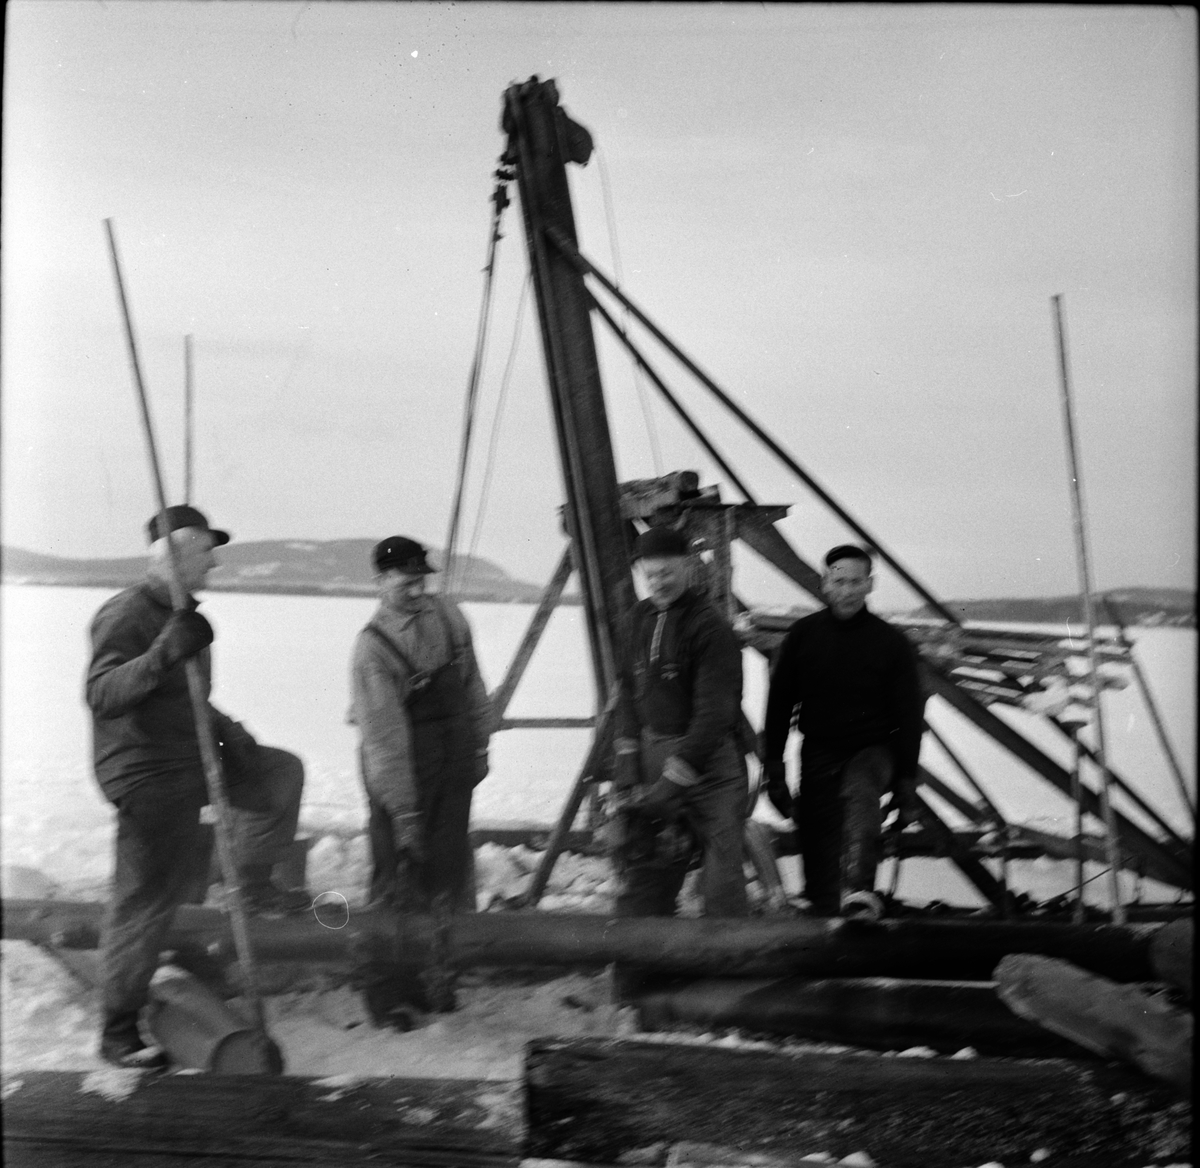 Arbrå,
Rensning av Kyrksjön,
20 Februari 1968